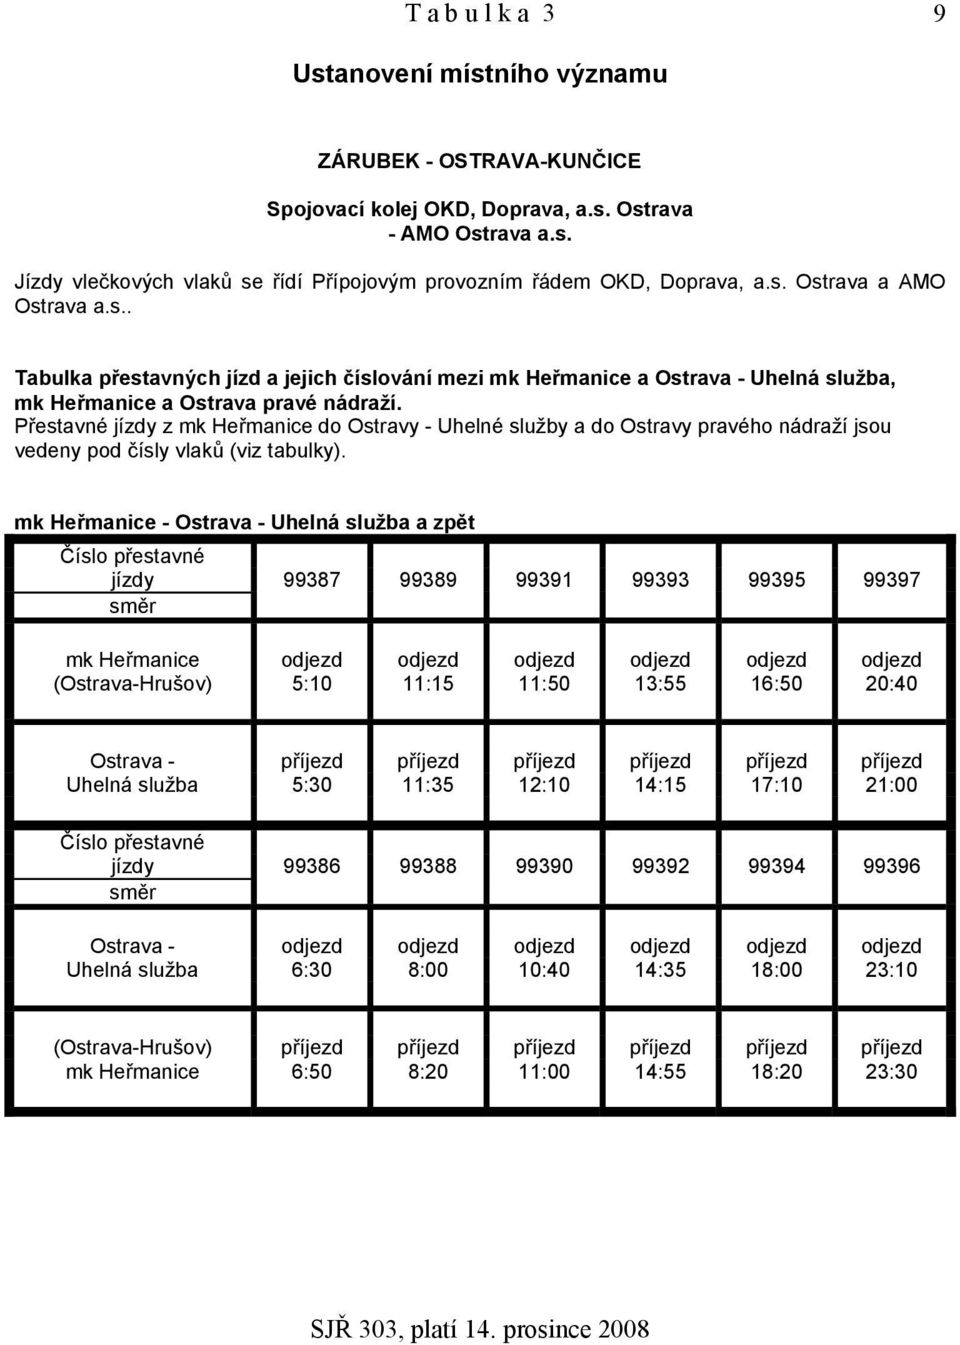 Přestavné jízdy z mk Heřmanice do Ostravy - Uhelné služby a do Ostravy pravého nádraží jsou vedeny pod čísly vlaků (viz tabulky).